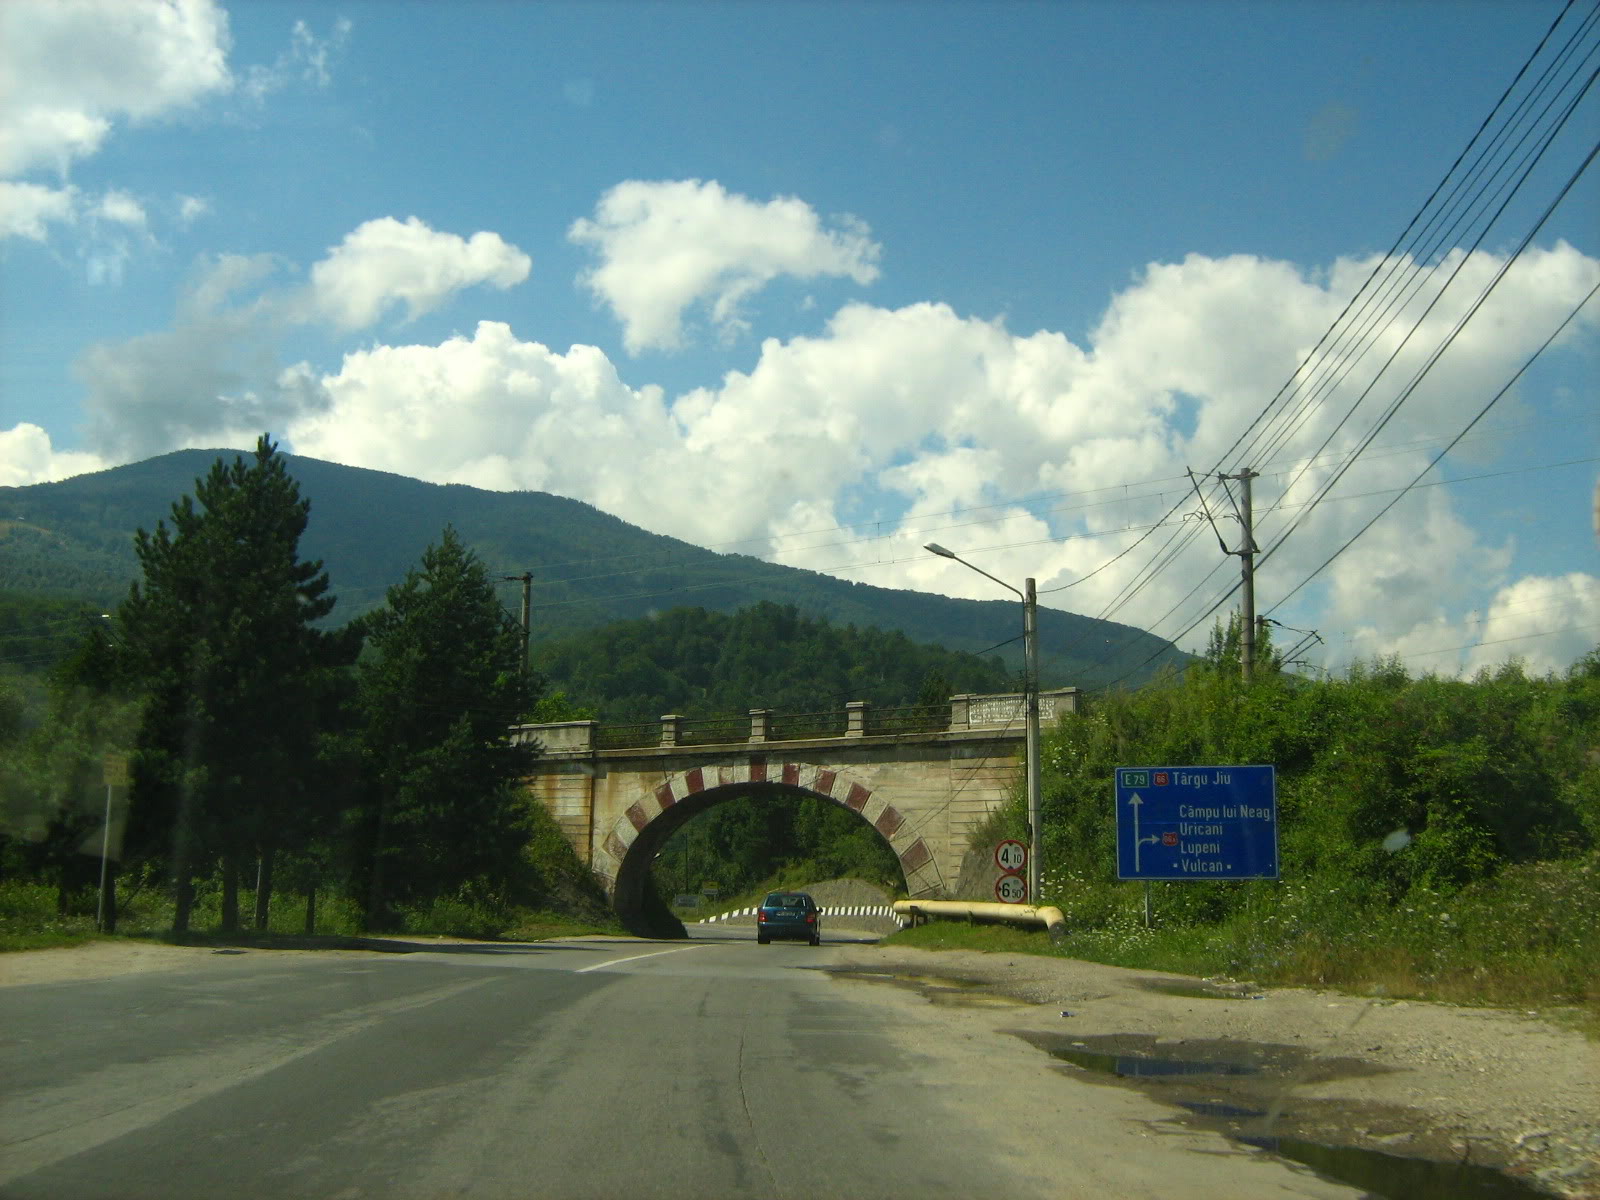 202 : Filiasi - Carbunesti - Targu Jiu - Petrosani - Simeria IMG_7253